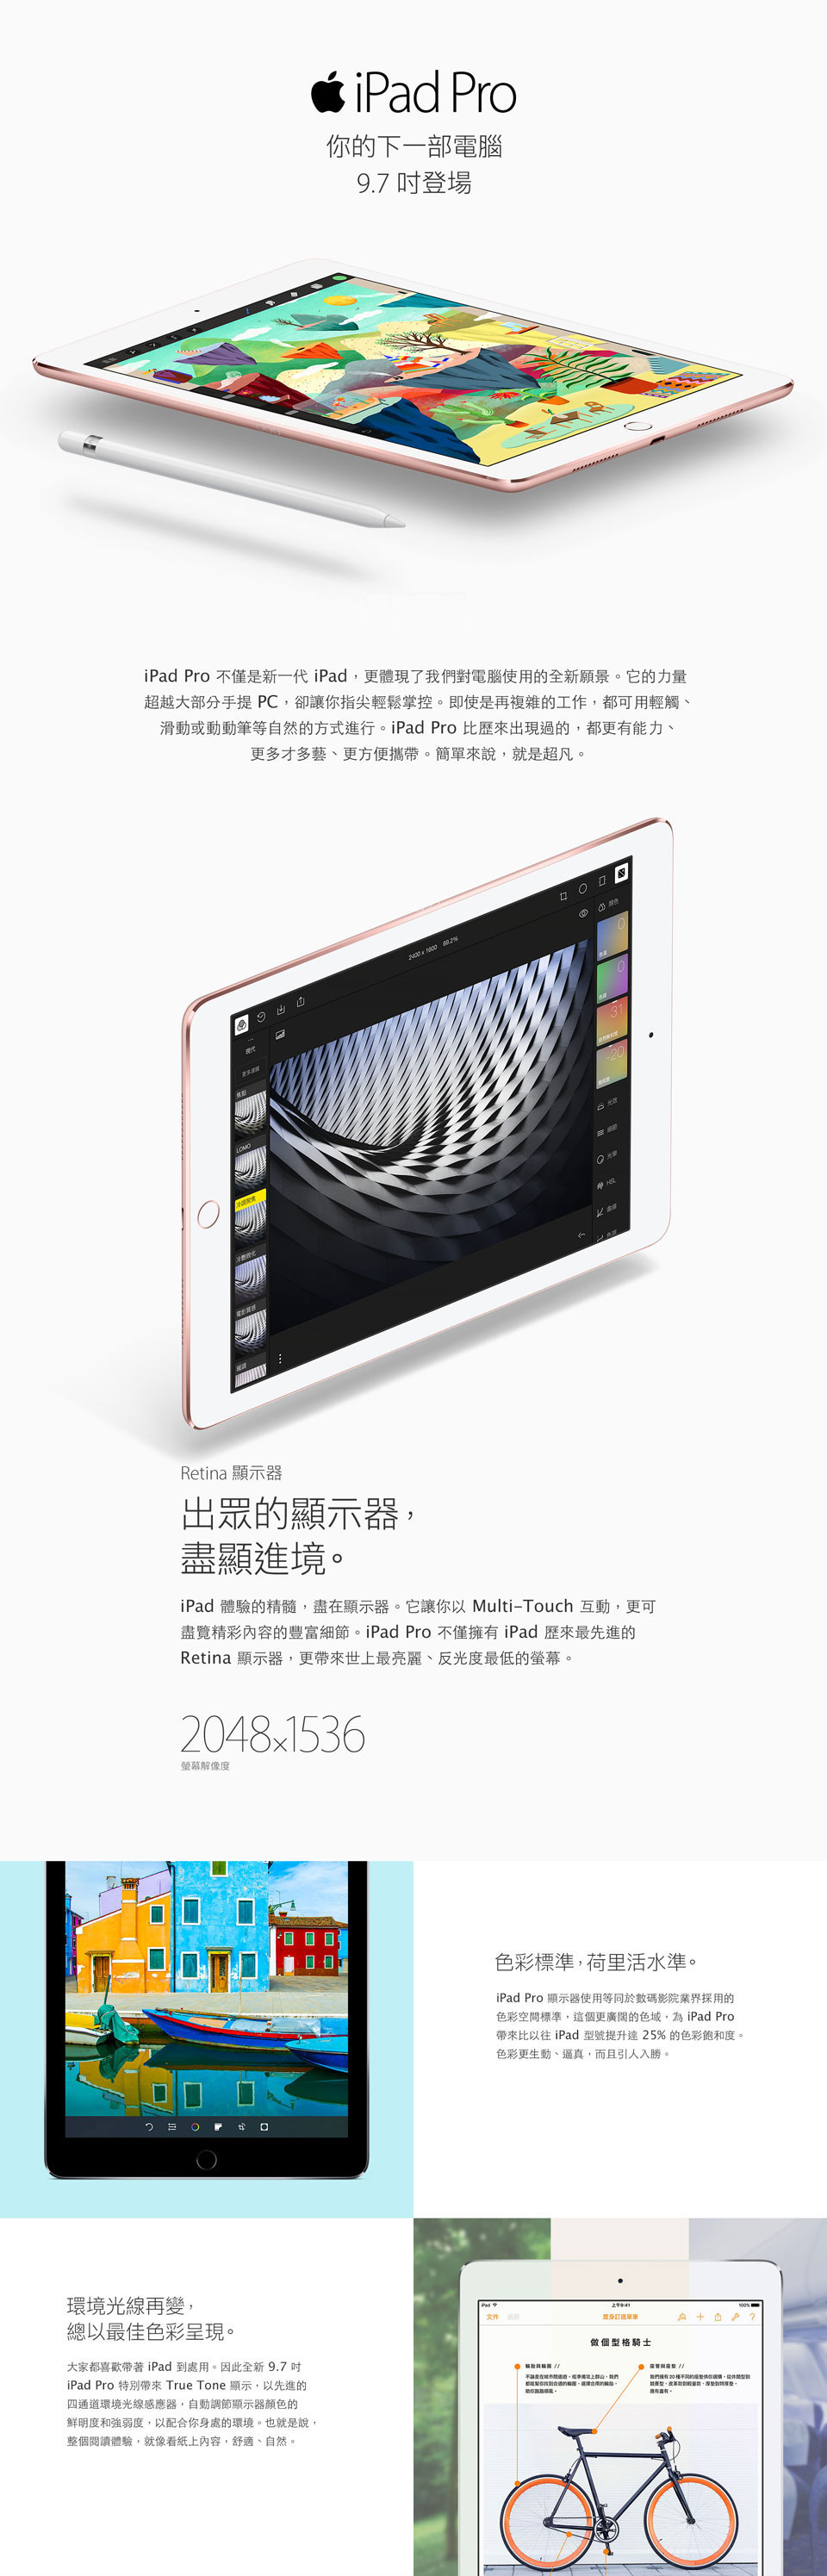 iPad Pro (9.7吋)